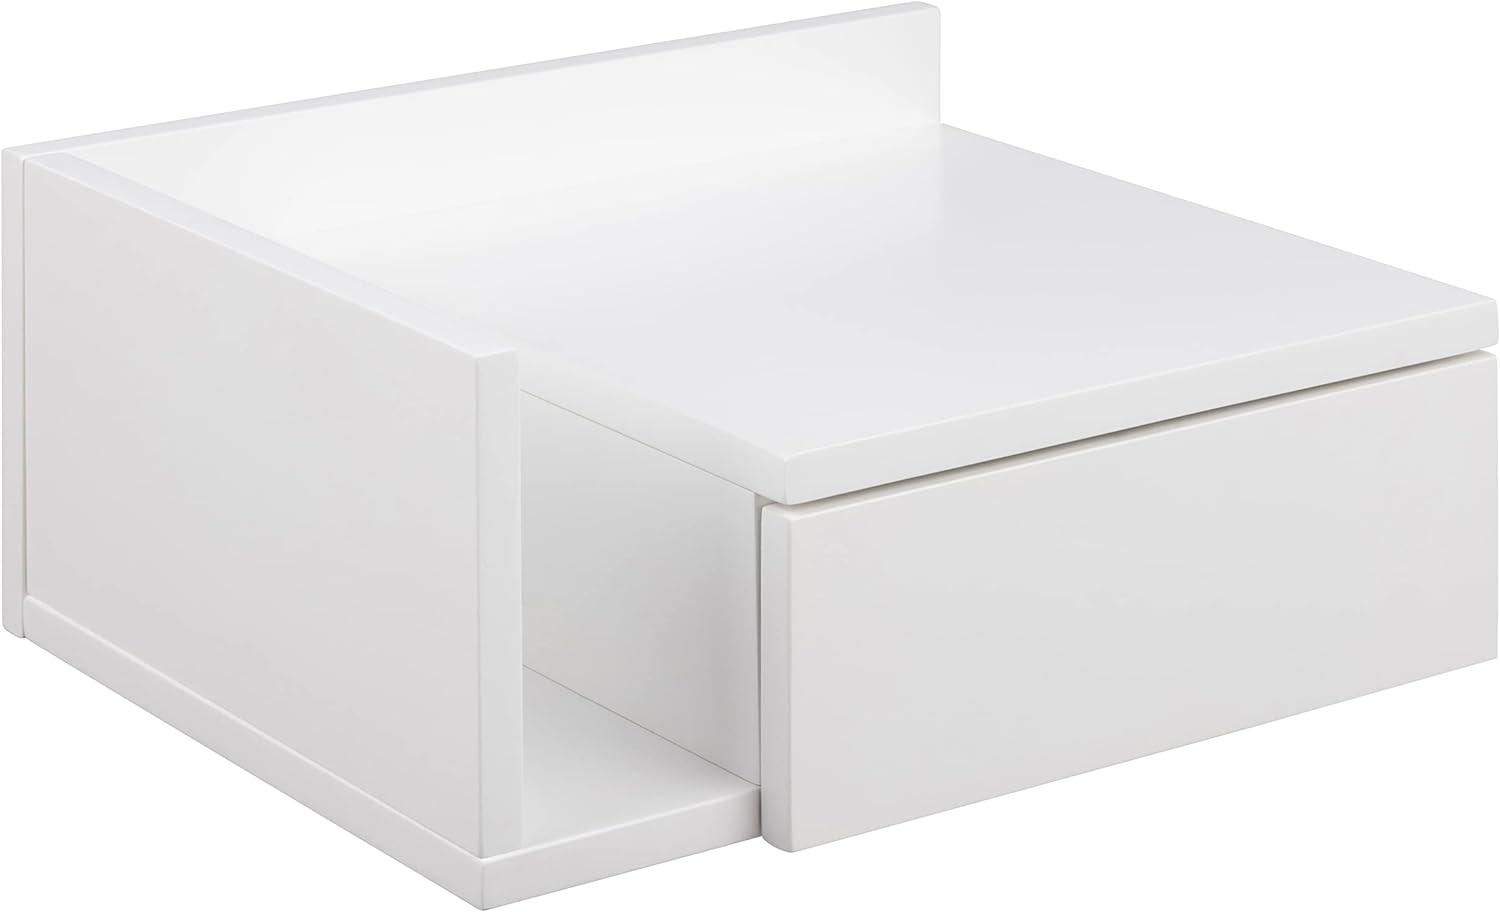 AC Design Furniture Fia weißer Nachttisch mit 1 Schublade, Weißer Wandschrank, minimalistischer Nachtschrank im Skandinavischen Stil, Wandregal mit Schublade, B: 40 x T: 32 x H: 16,5 cm, 1 Stk Bild 1